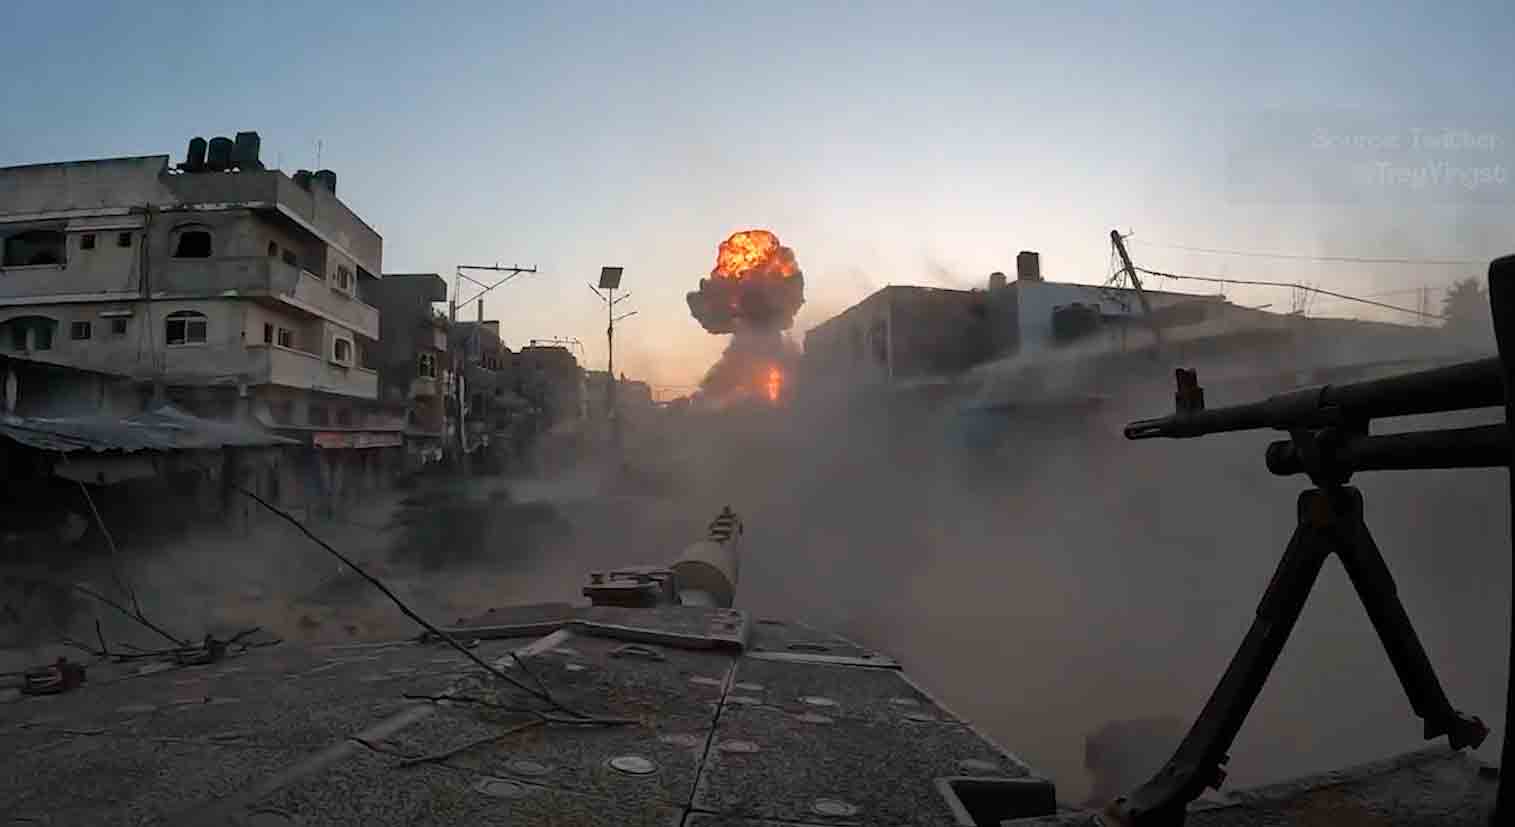 メルカバMk.3タンク内部からのビデオでガザの北部の戦闘が映し出されています。Twitter @TreyYingstからの再生